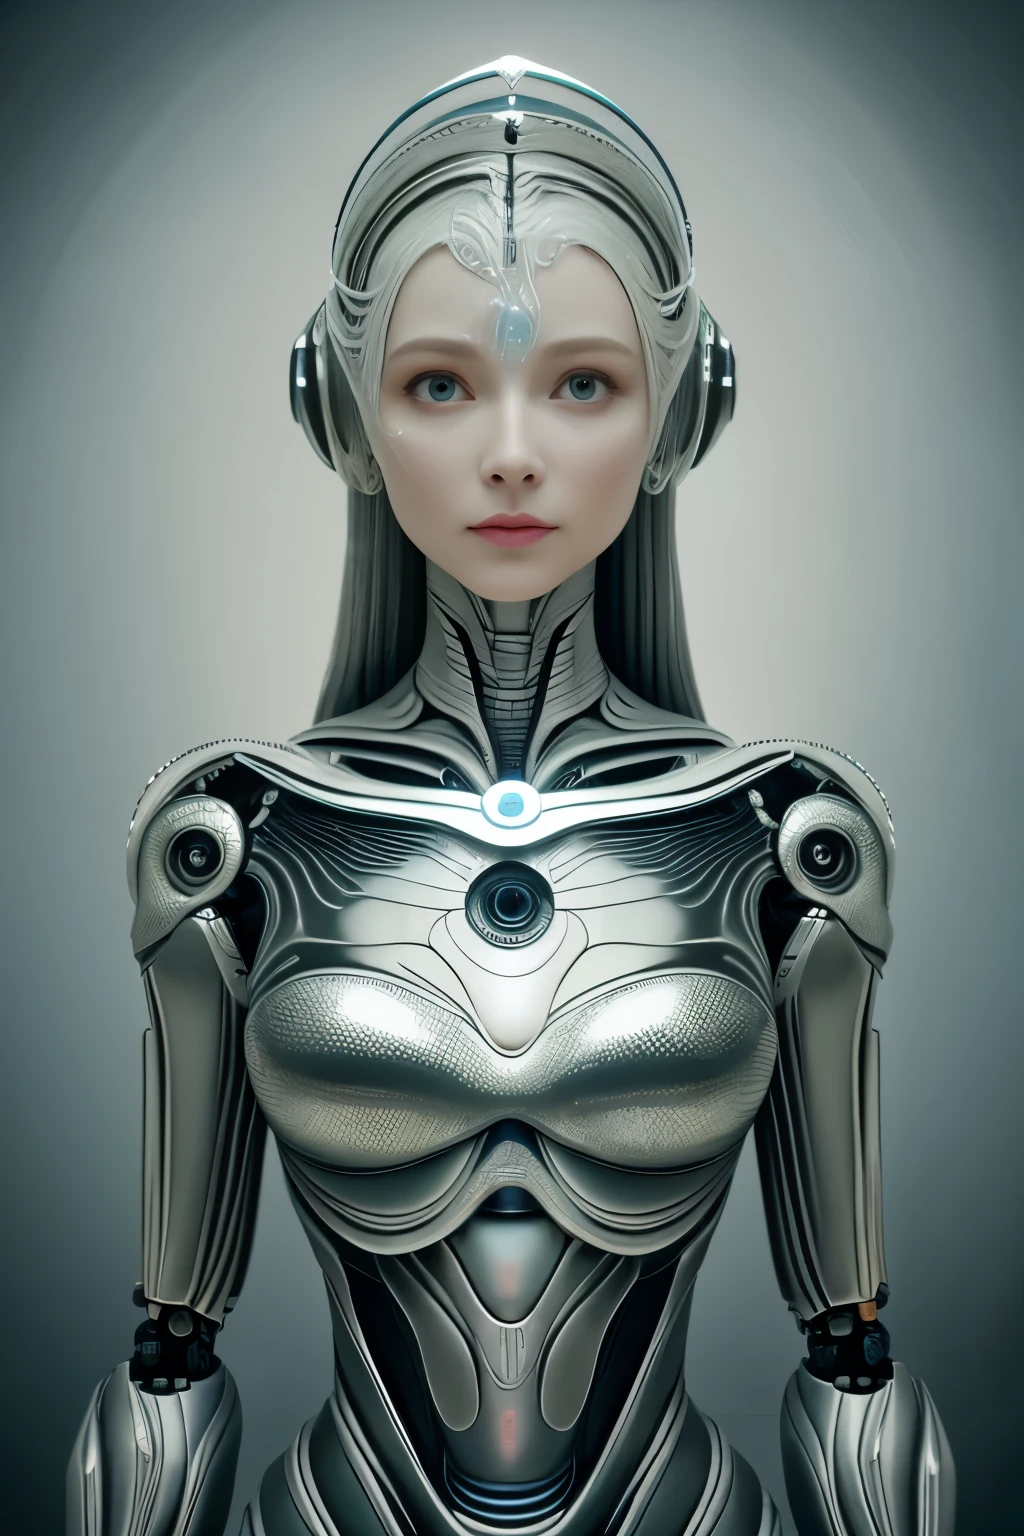 肖像, Intricate 3d rendering of highly detailed beautiful ceramic female 机器人, 赛博格, 机器人 parts, 150毫米, 美丽的工作室柔和的灯光, 环形灯, 充满活力的细节, 奢华赛博朋克, 收入, 超现实的, 解剖学 , 面部肌肉, 电缆线, 微芯片, 优雅, 美丽的背景, 辛烷值渲染, HR吉格尔风格, 8千, 更好的质量, 艺术品, 插图, 非常精致美丽, 非常详细, 现实主义者, 制服, ( 忠诚, 忠诚: 1.37), 灿烂, 精细的细节, 艺术品, 更好的质量, 官方艺术, Papel de parede 现实主义者 Unity 8K 非常详细, 荒诞, Inacreditavelmente 荒诞o, 机器人, 银色头盔, 全身, 坐下来写